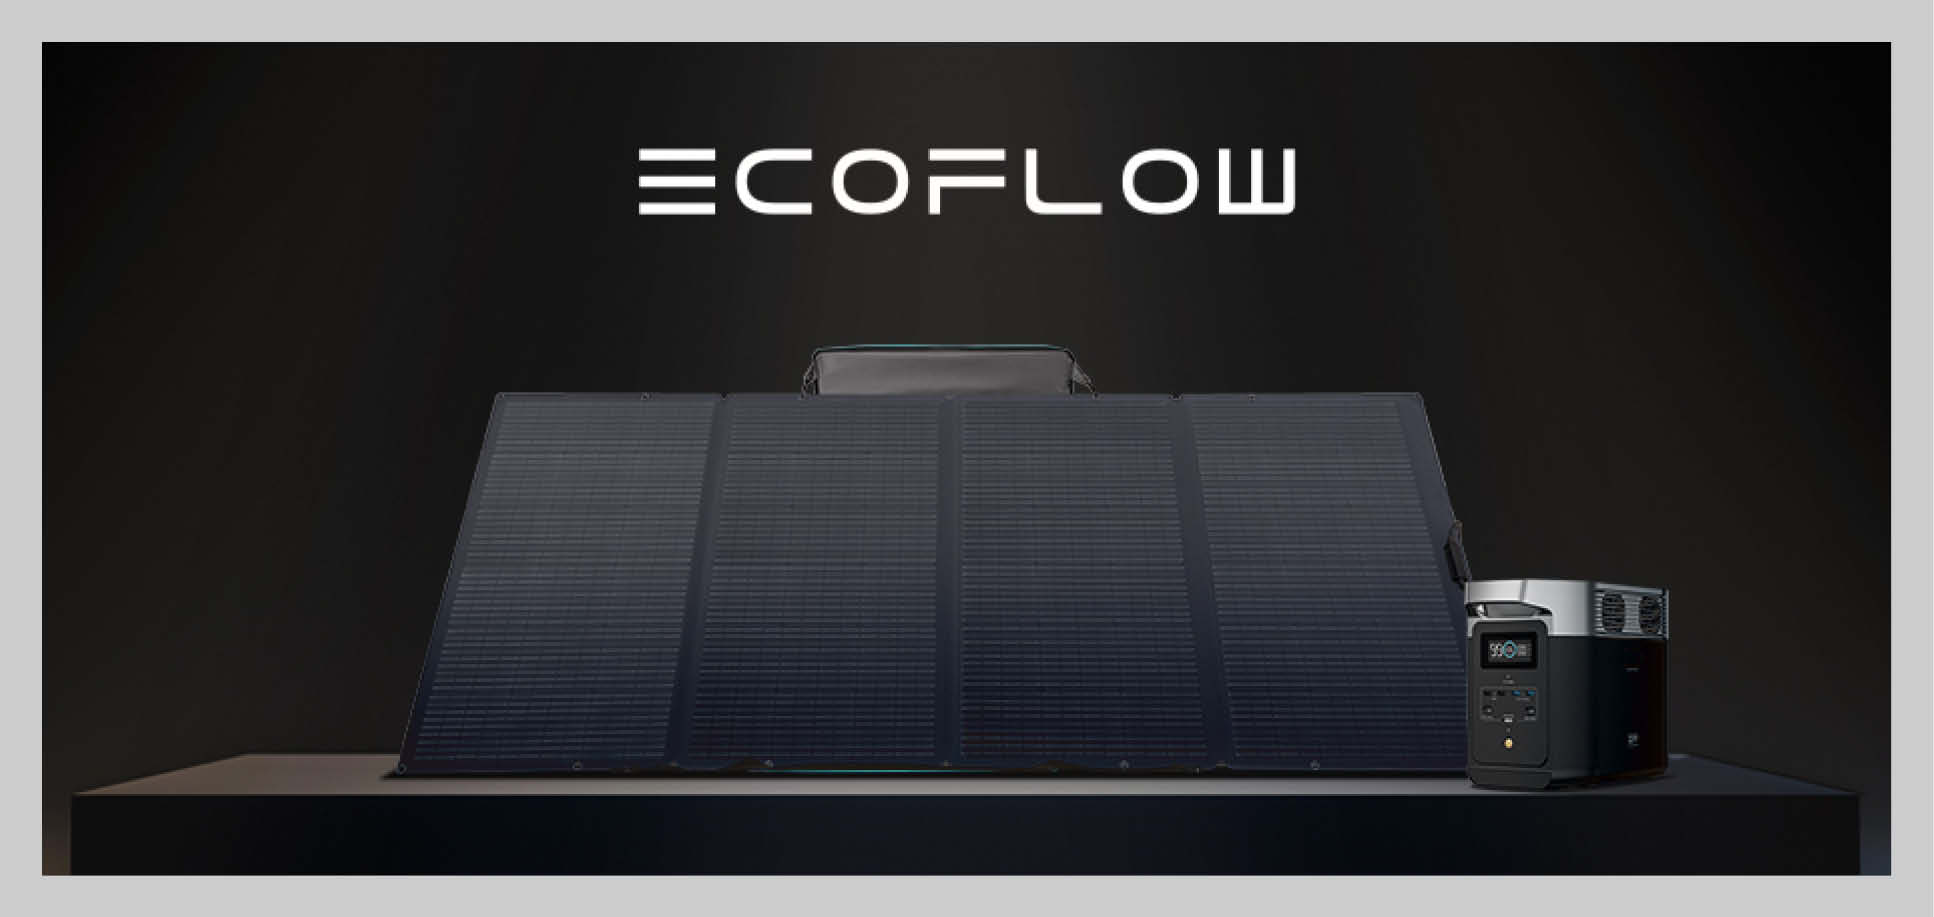 Ecoflow napelemek